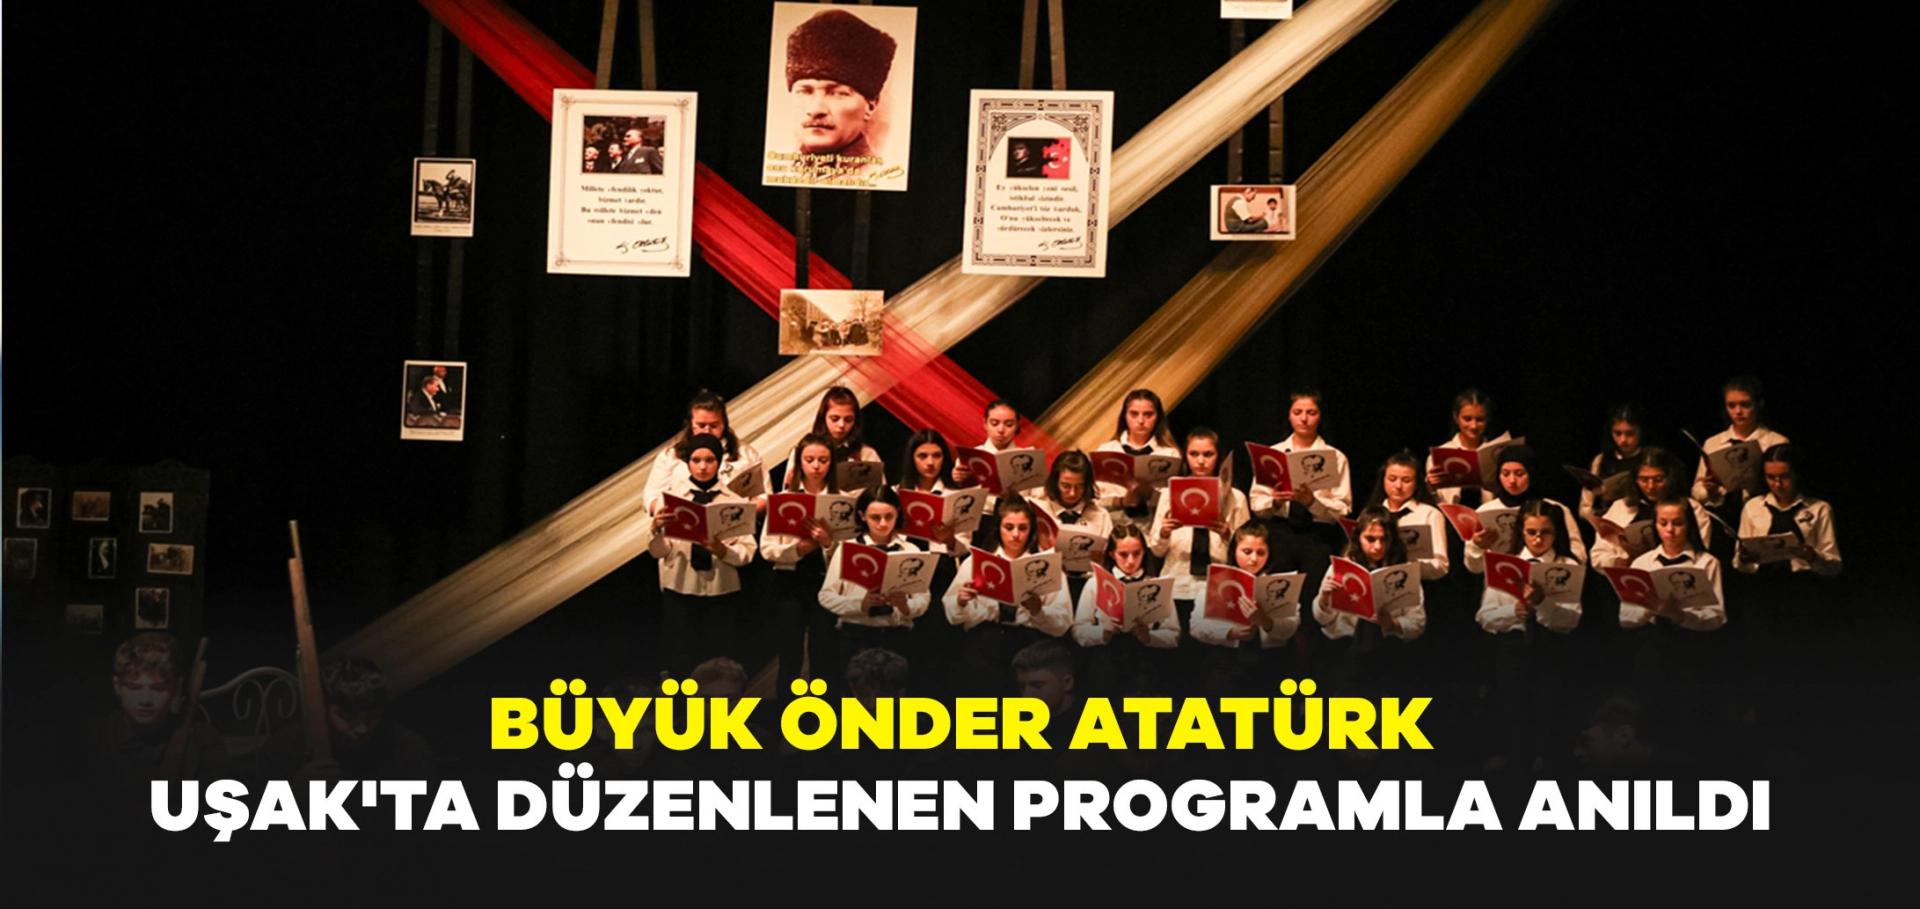 Büyük Önder Atatürk, Uşak'ta düzenlenen programla anıldı